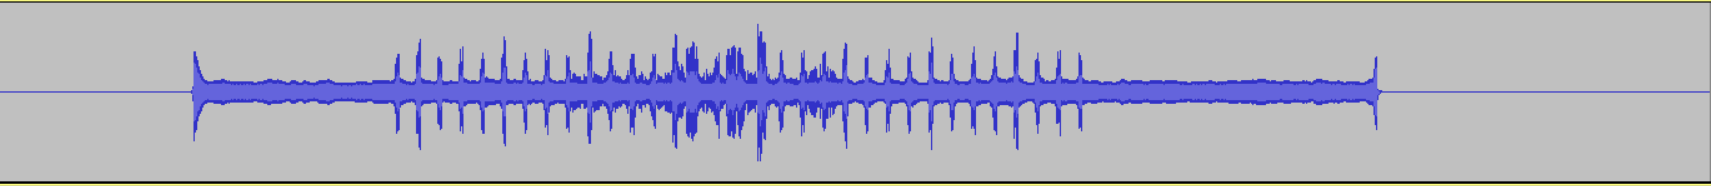 Noise-cancelled audio waveform